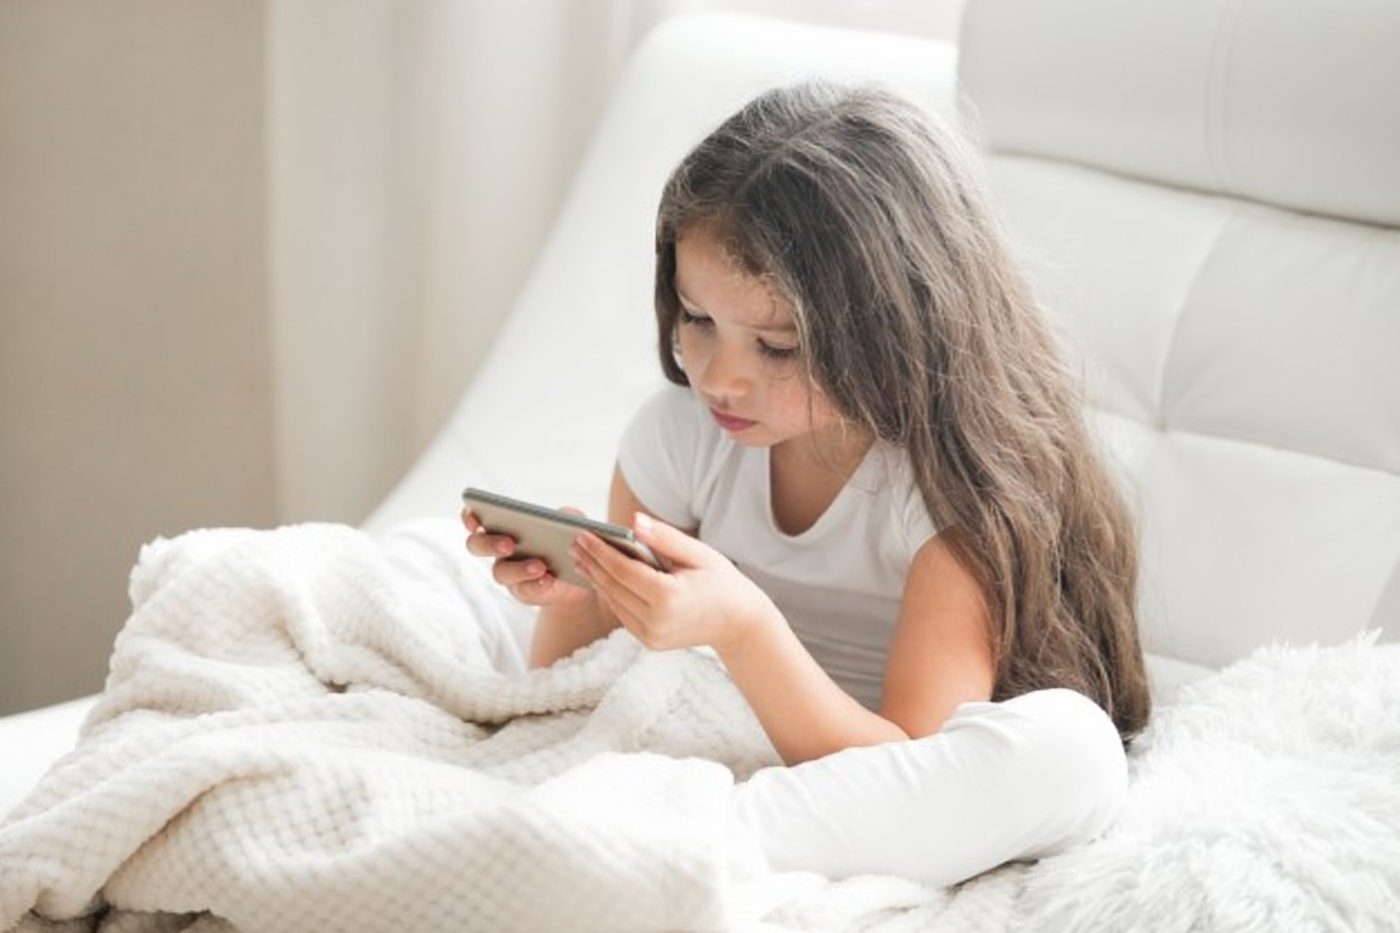 Mobitel može trajno oštetiti vid vaše djece